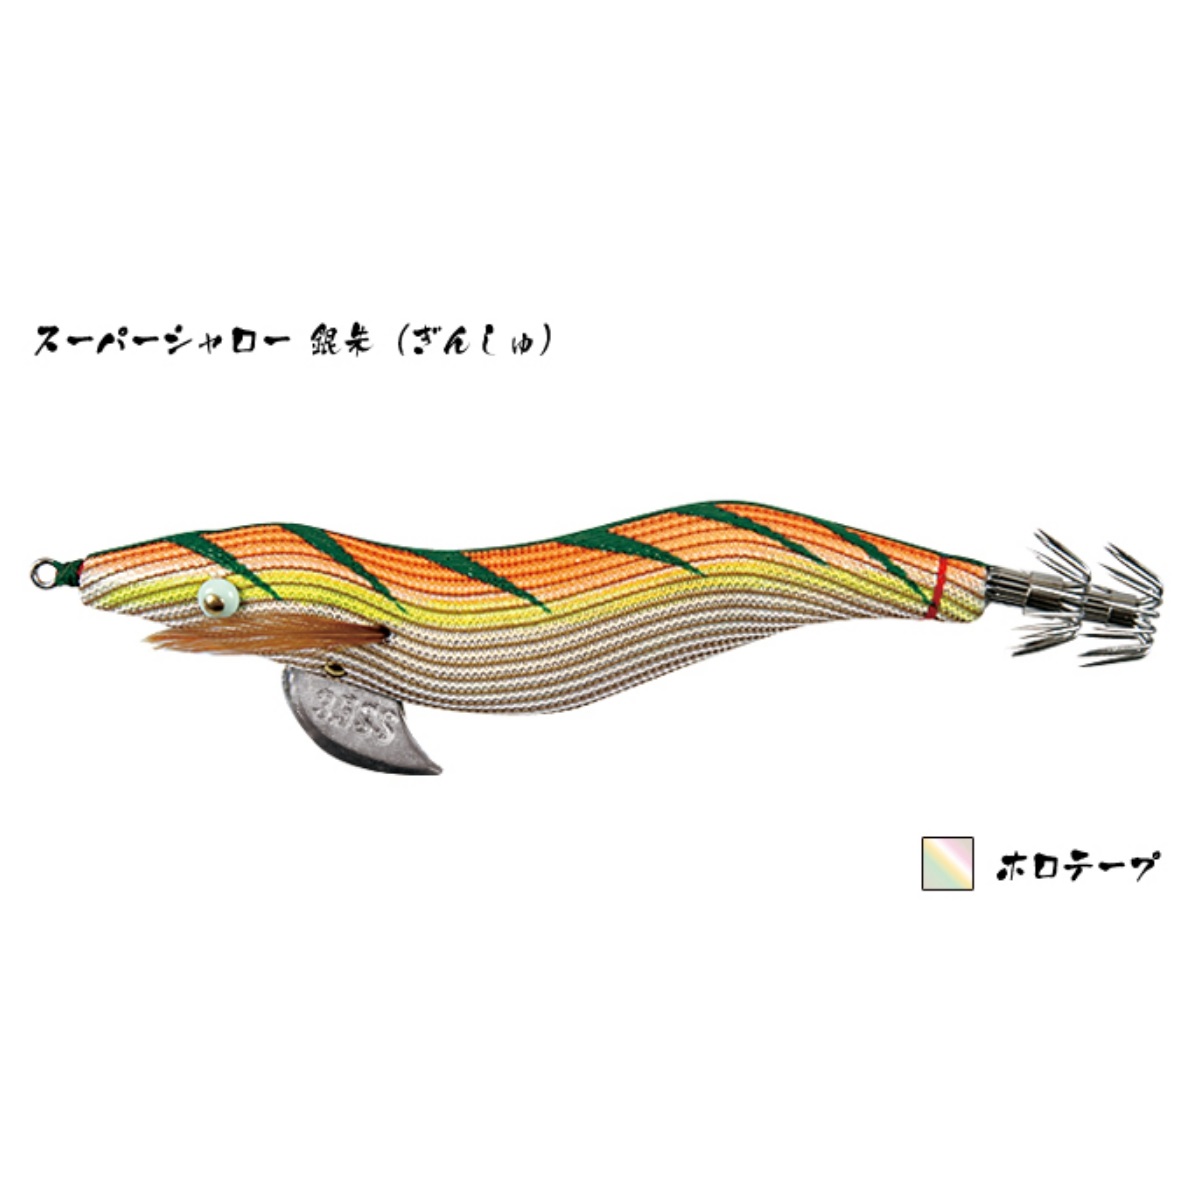 林釣漁具製作所/HAYASHI 餌木猿 SS 3.5号 スーパーシャロースローシンキング イカエギ(メール便対応)